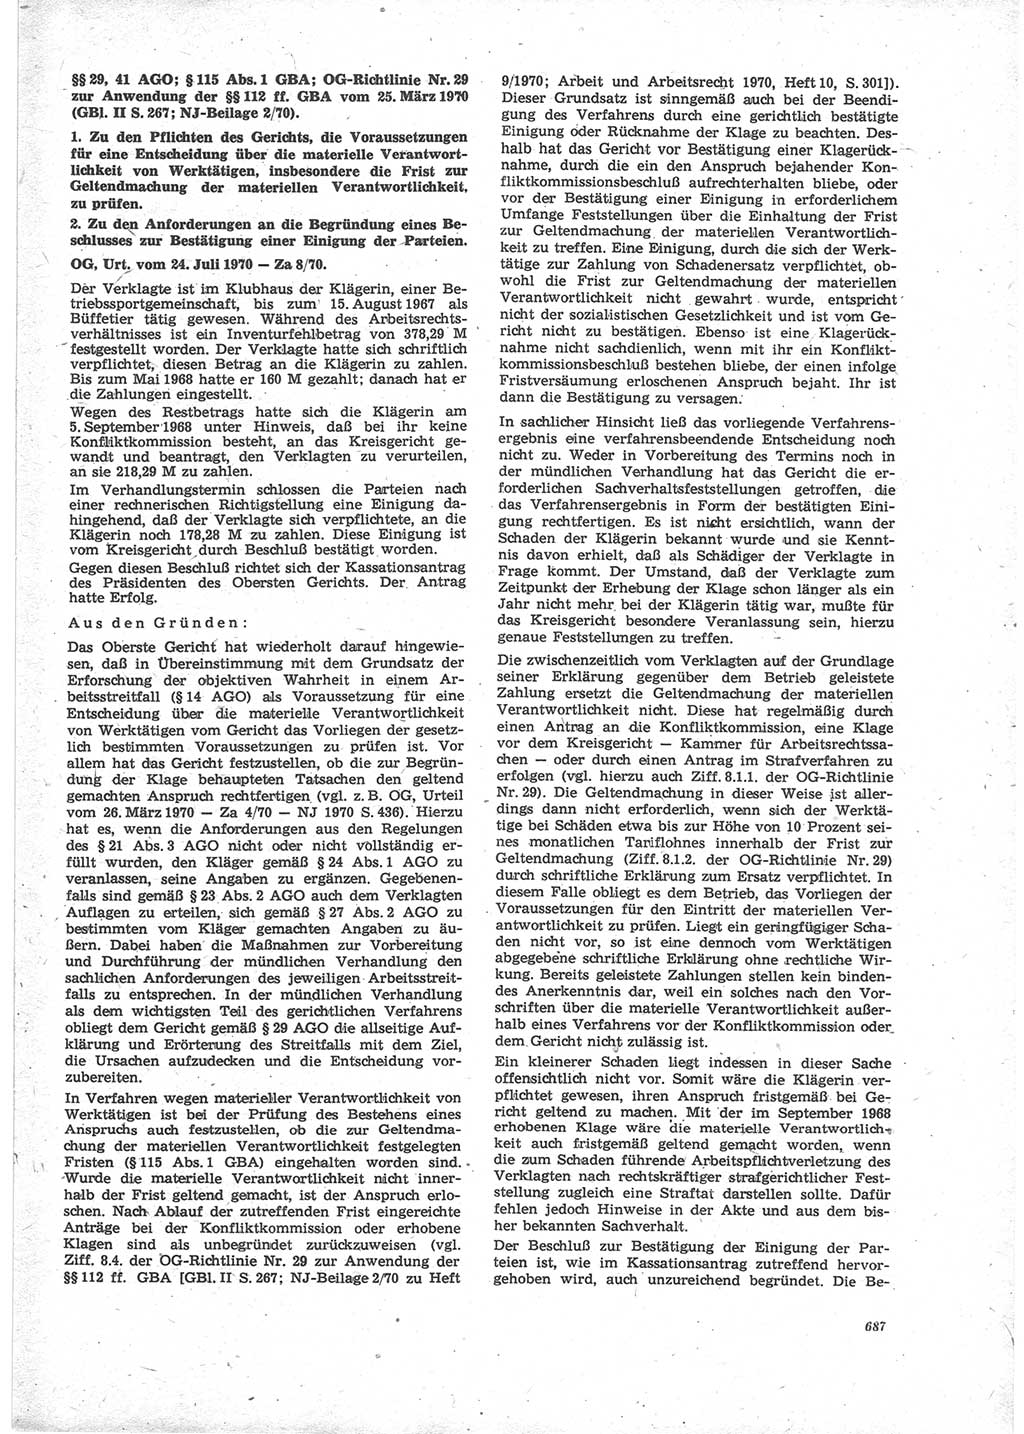 Neue Justiz (NJ), Zeitschrift für Recht und Rechtswissenschaft [Deutsche Demokratische Republik (DDR)], 24. Jahrgang 1970, Seite 687 (NJ DDR 1970, S. 687)